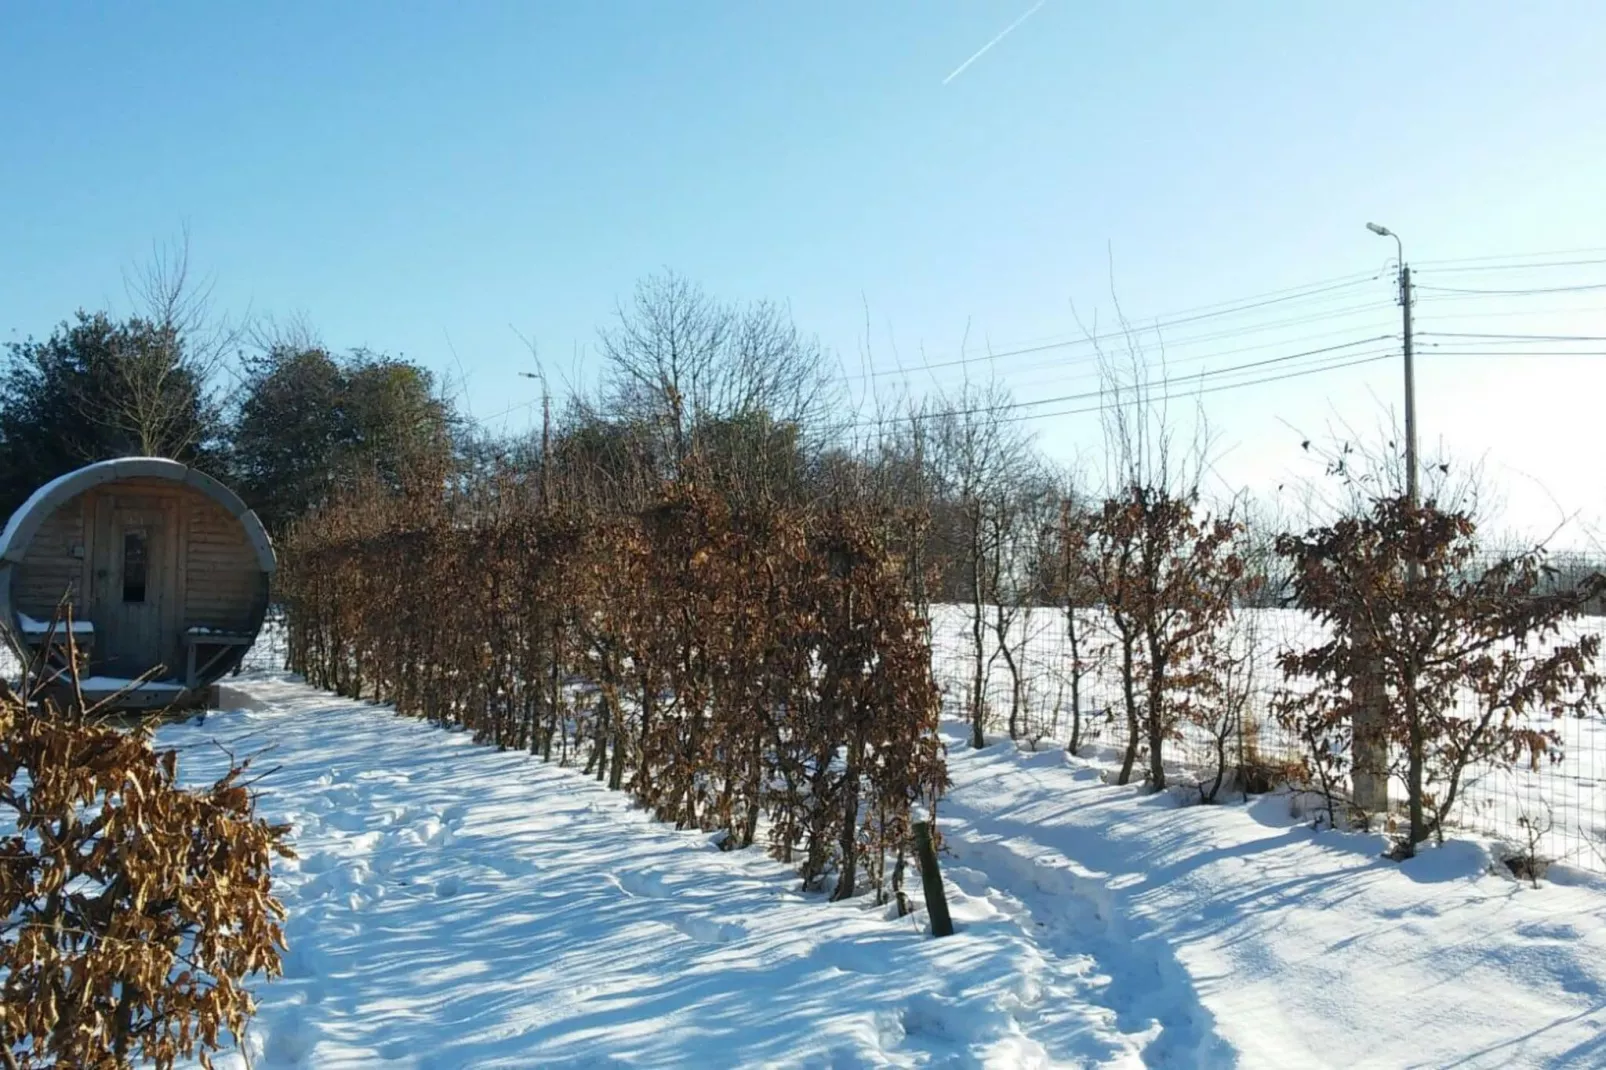 La Limbourgeoise-Tuin winter